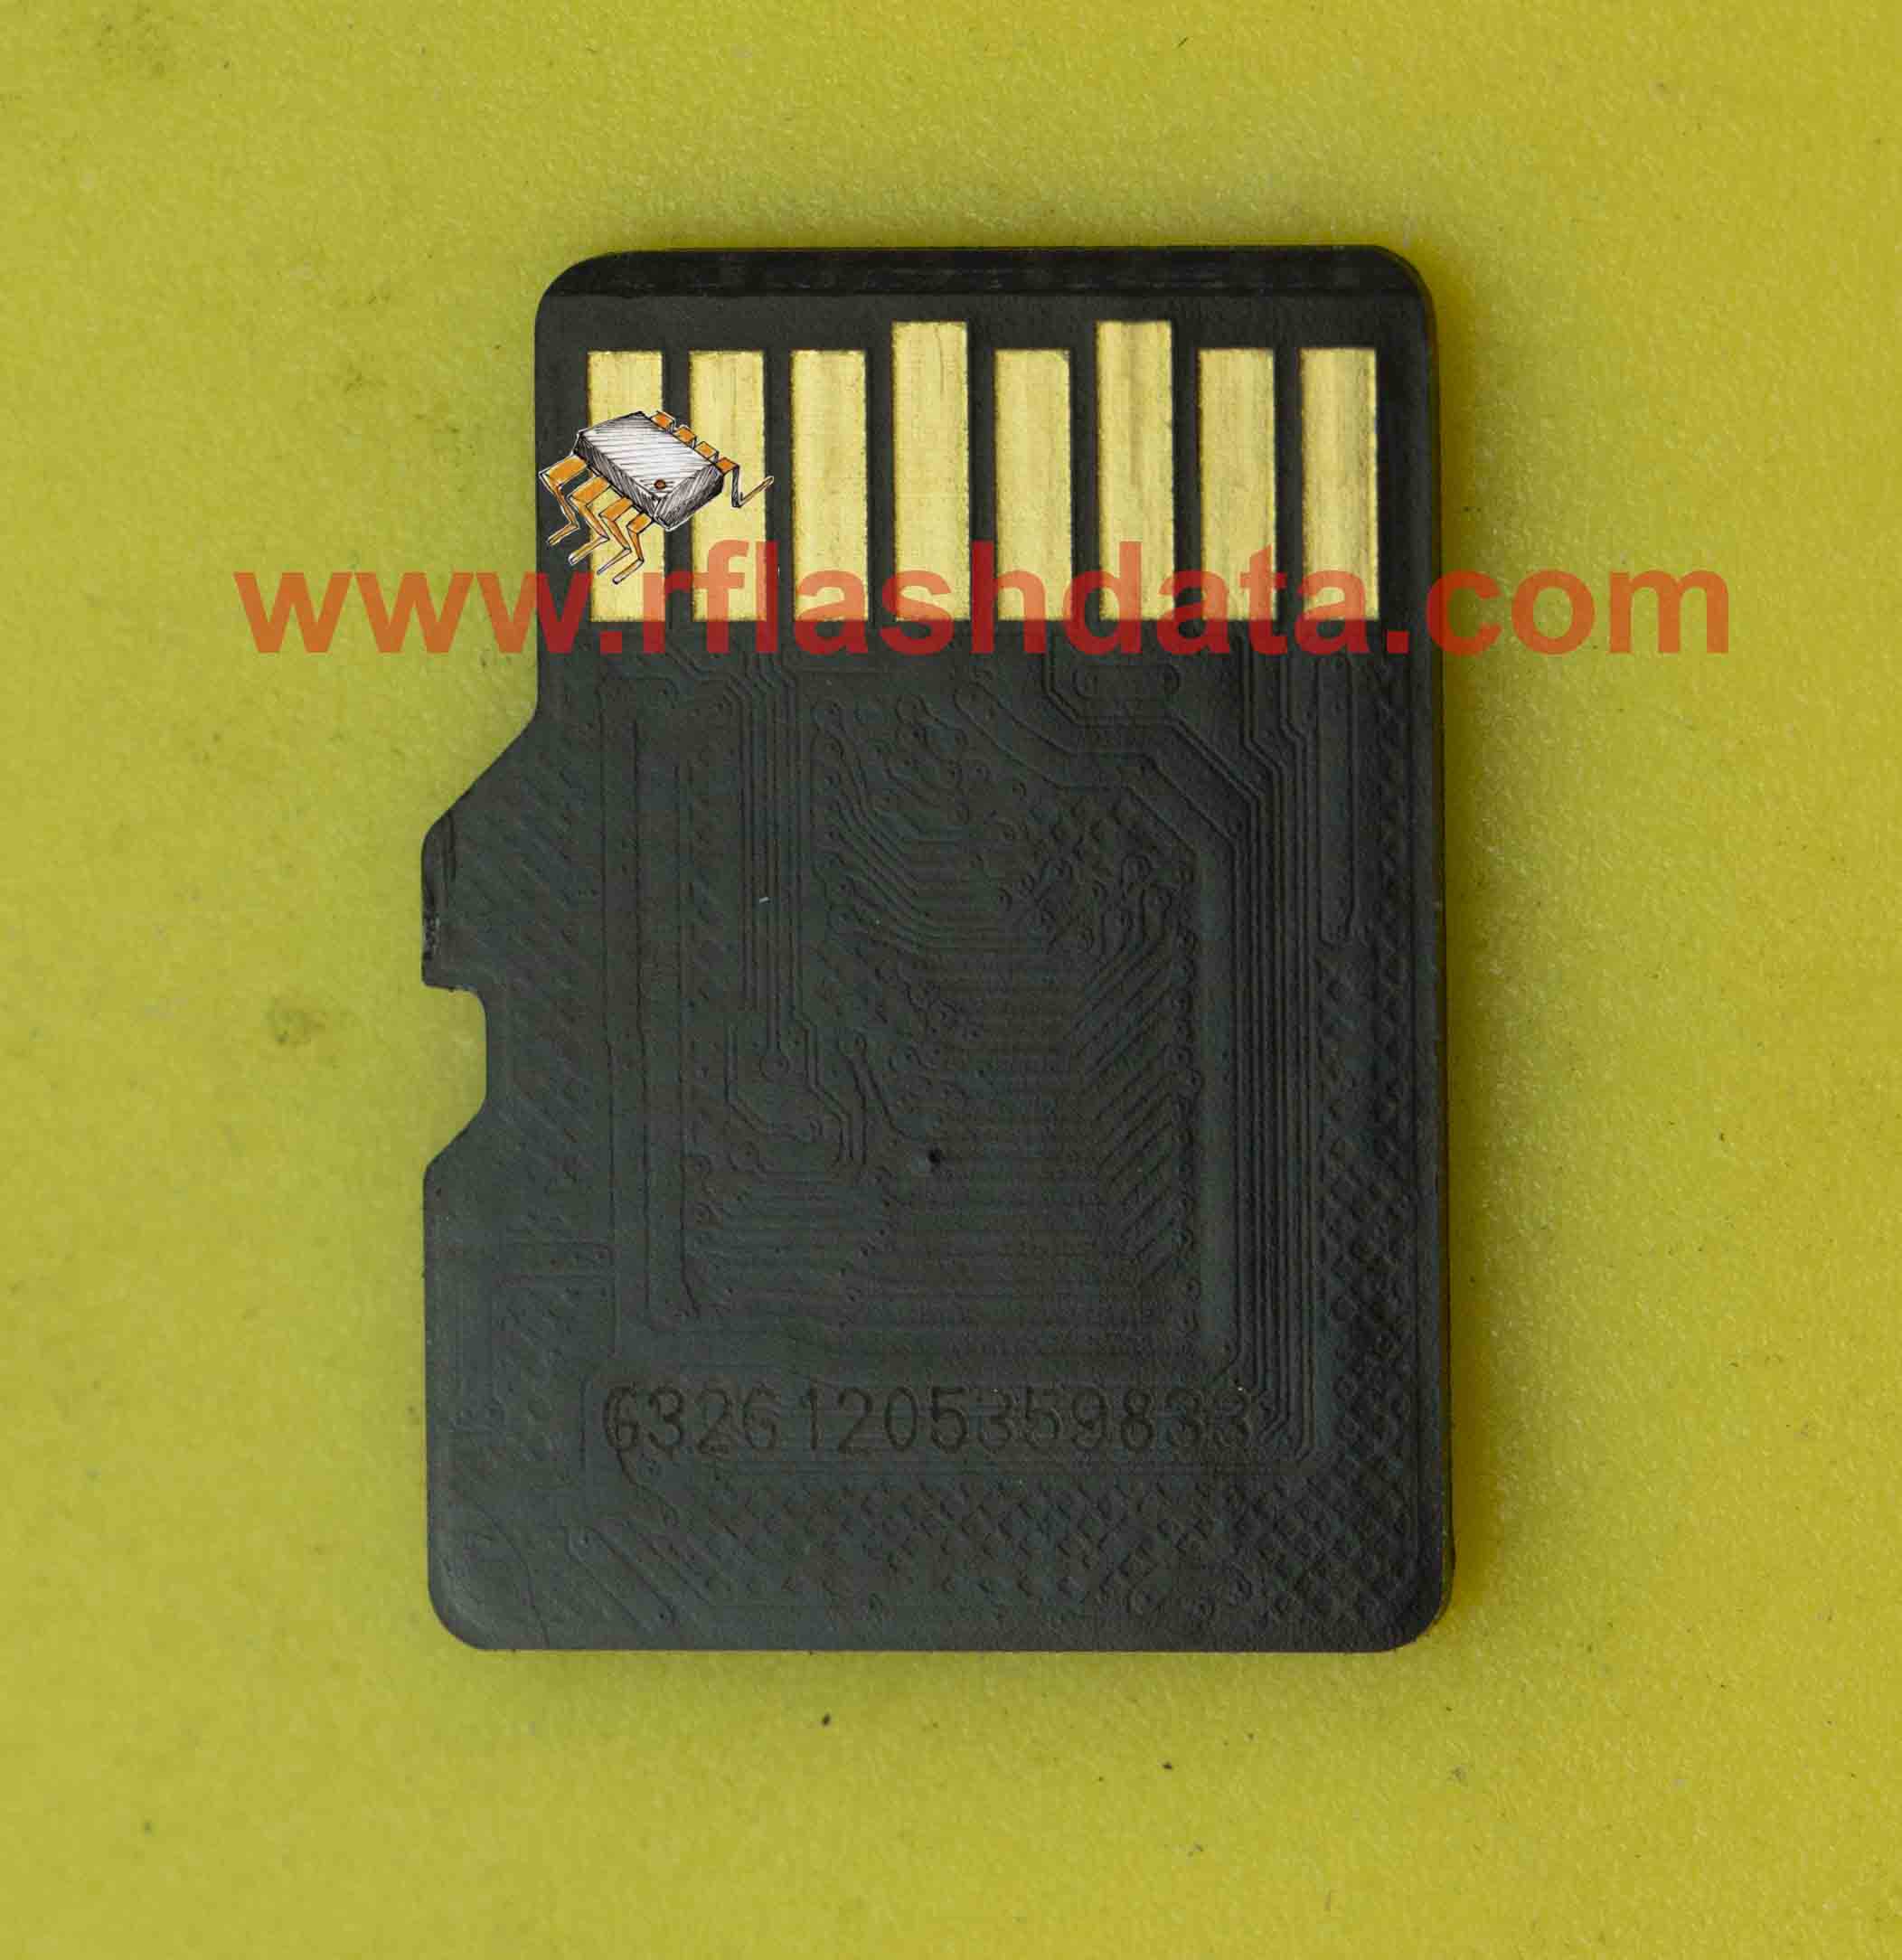 Adata microSD G32G1205359833